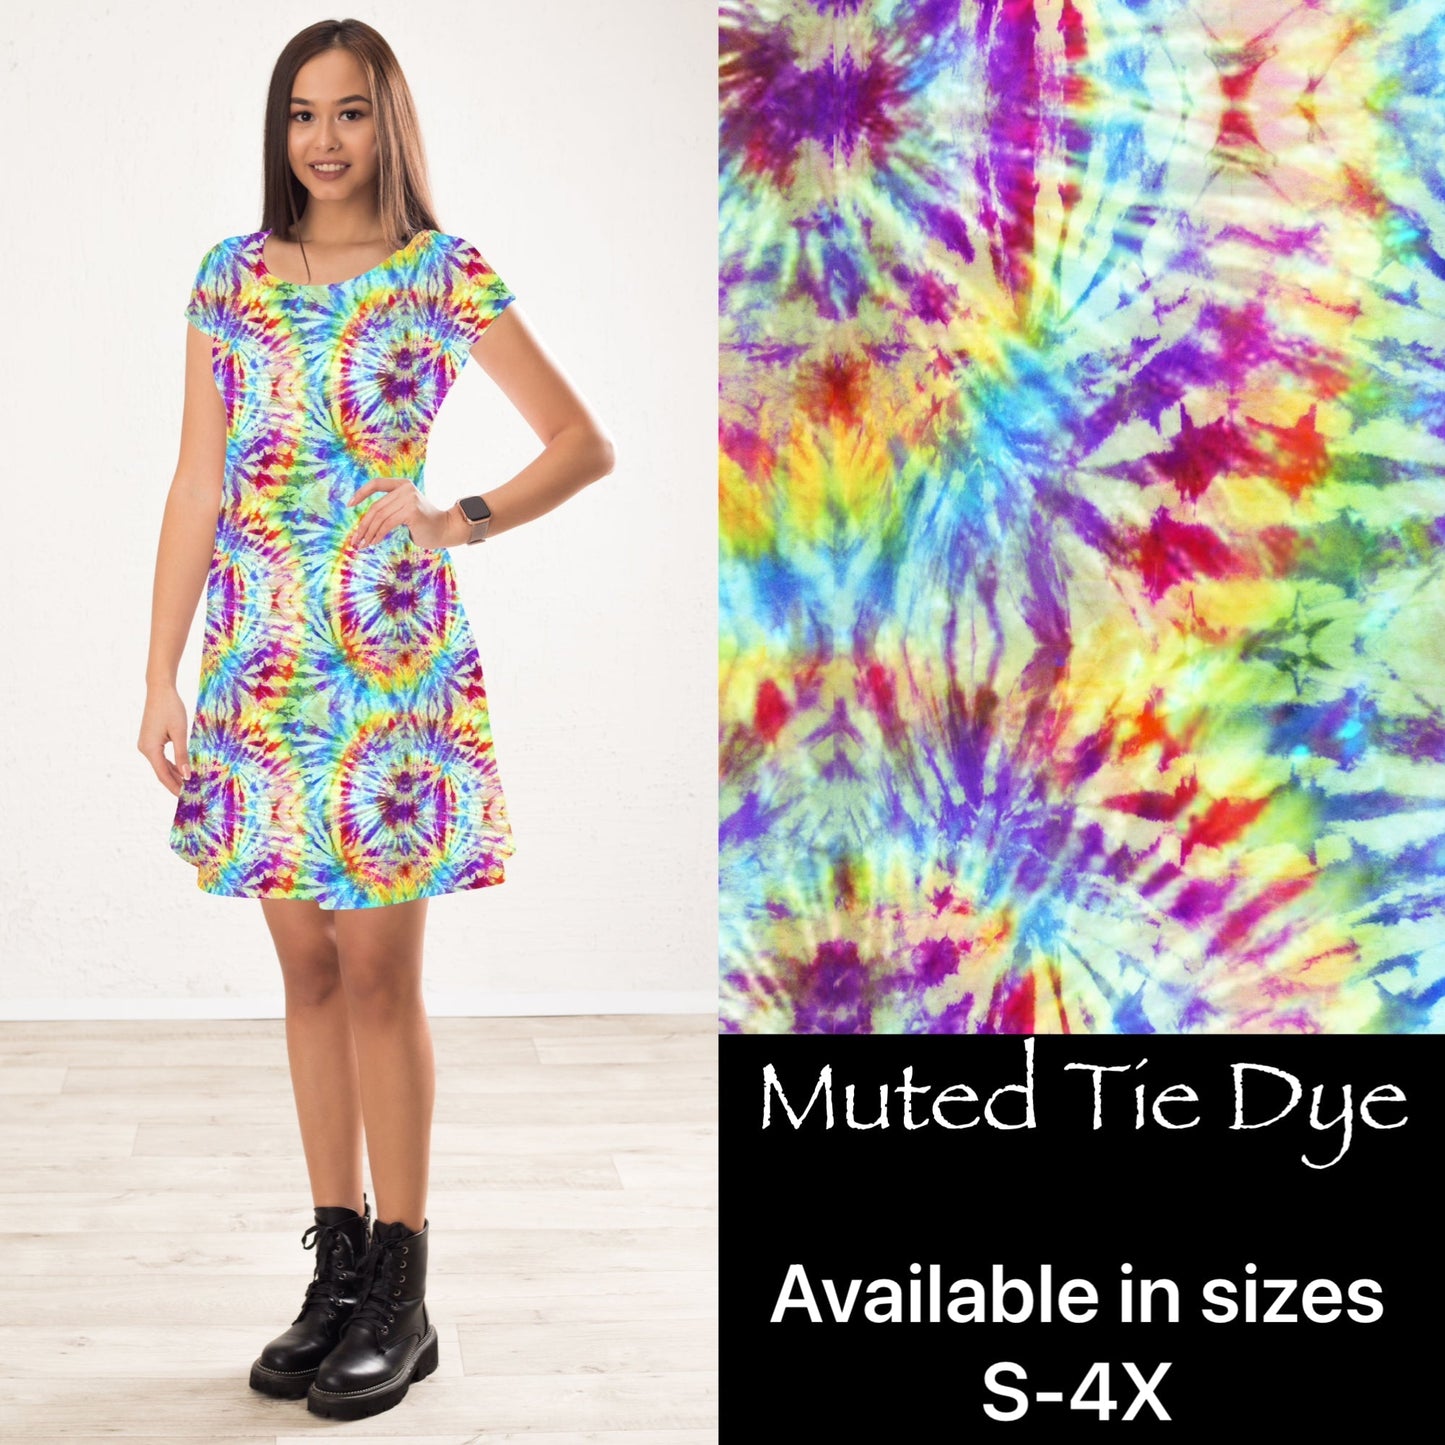 Muted Tie Dye Dress